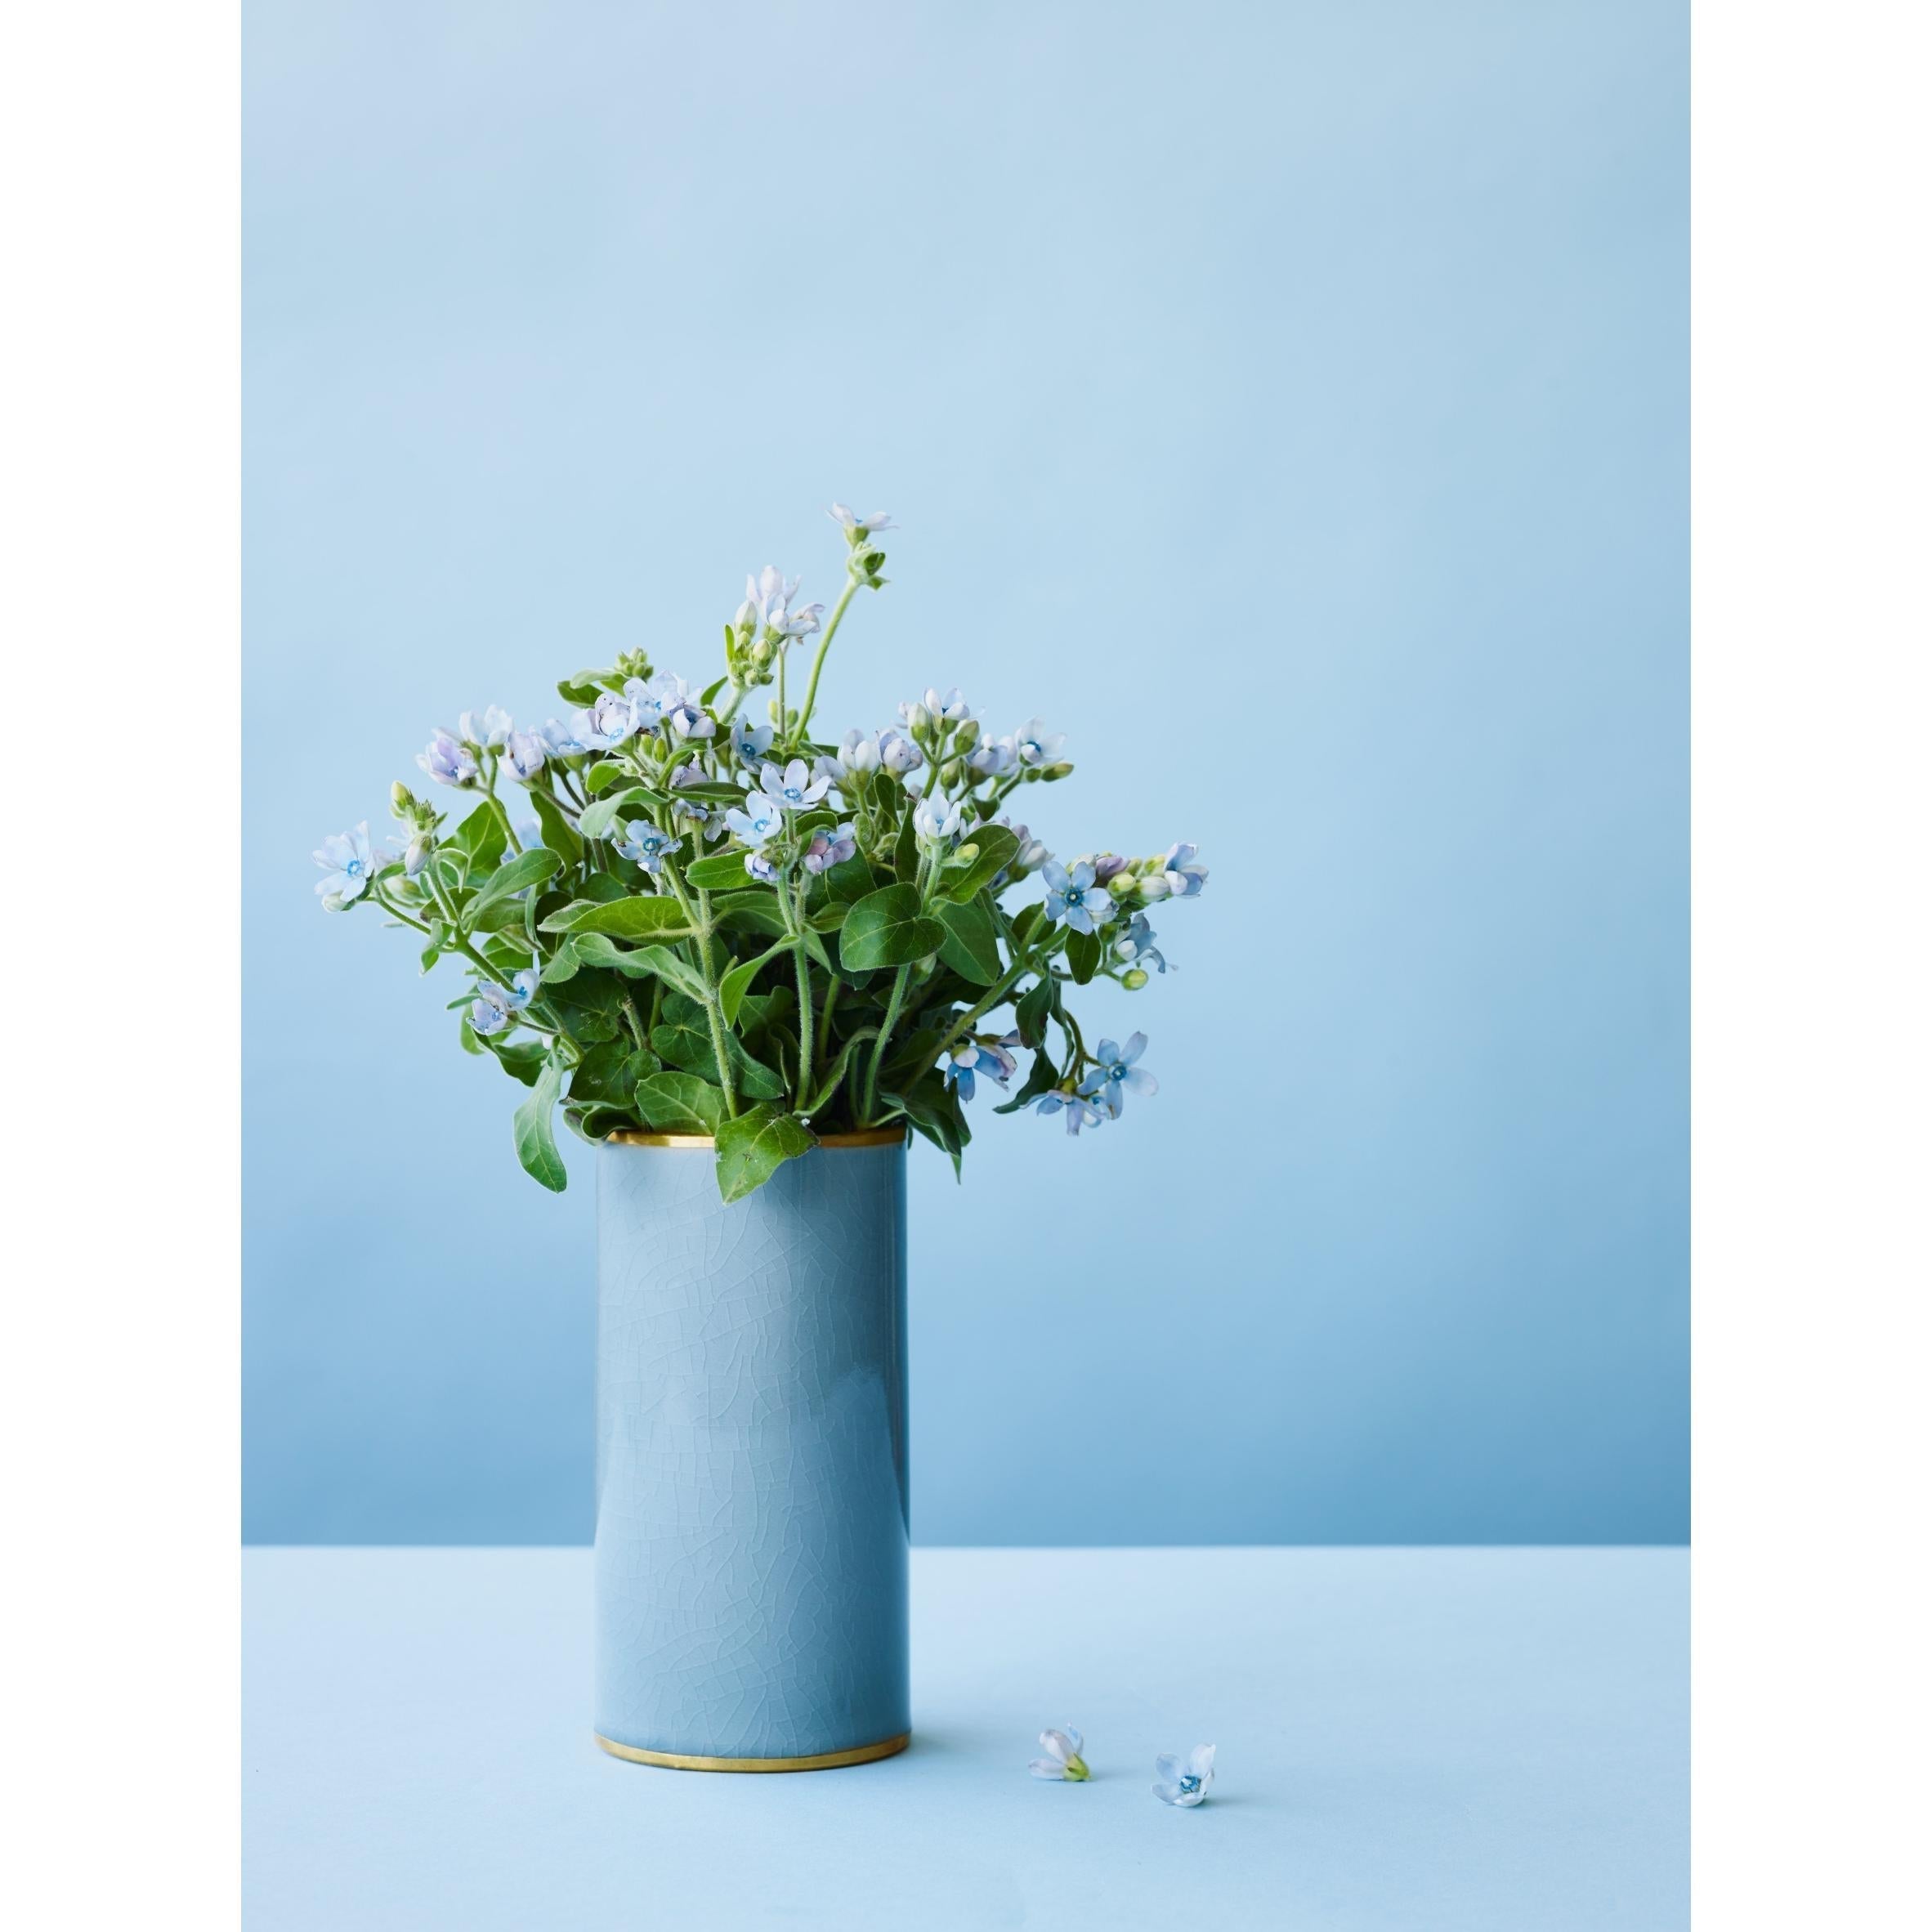 Lucie Kaas Matee vase turquoise, 18 cm